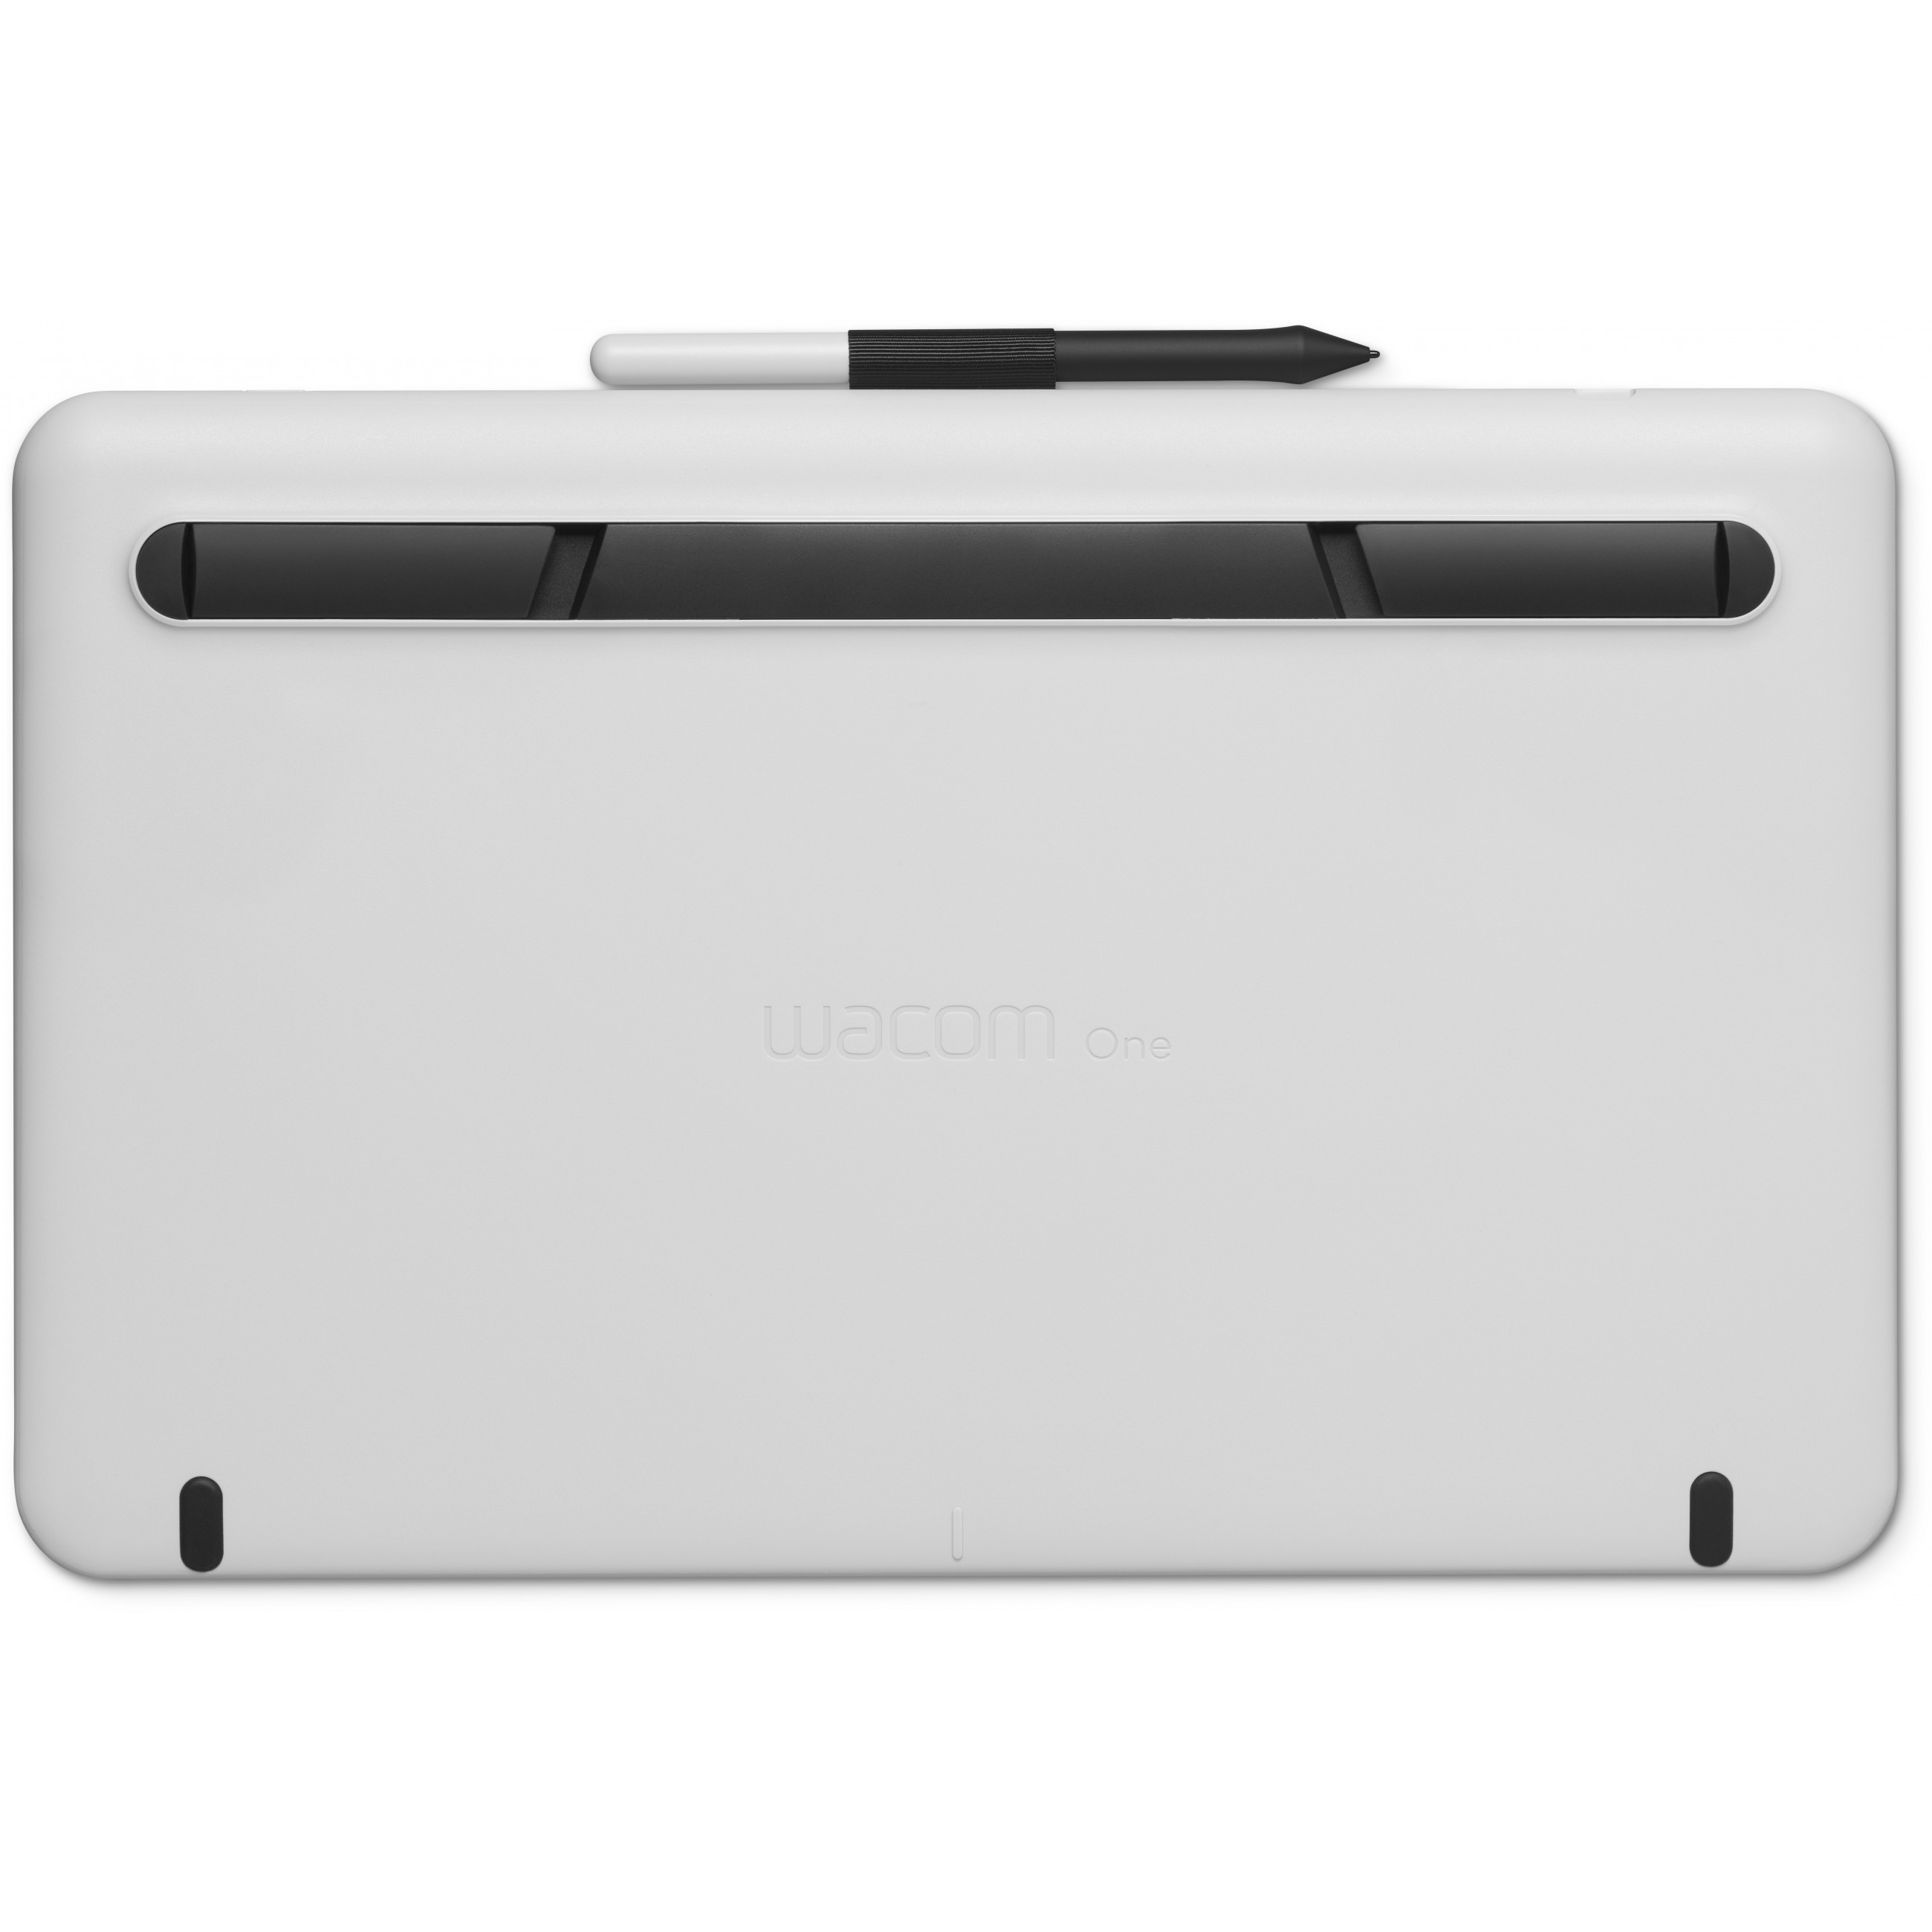 Wacom One 13 Grafiktablett Weiß 2540 lpi 294 x 166 mm USB